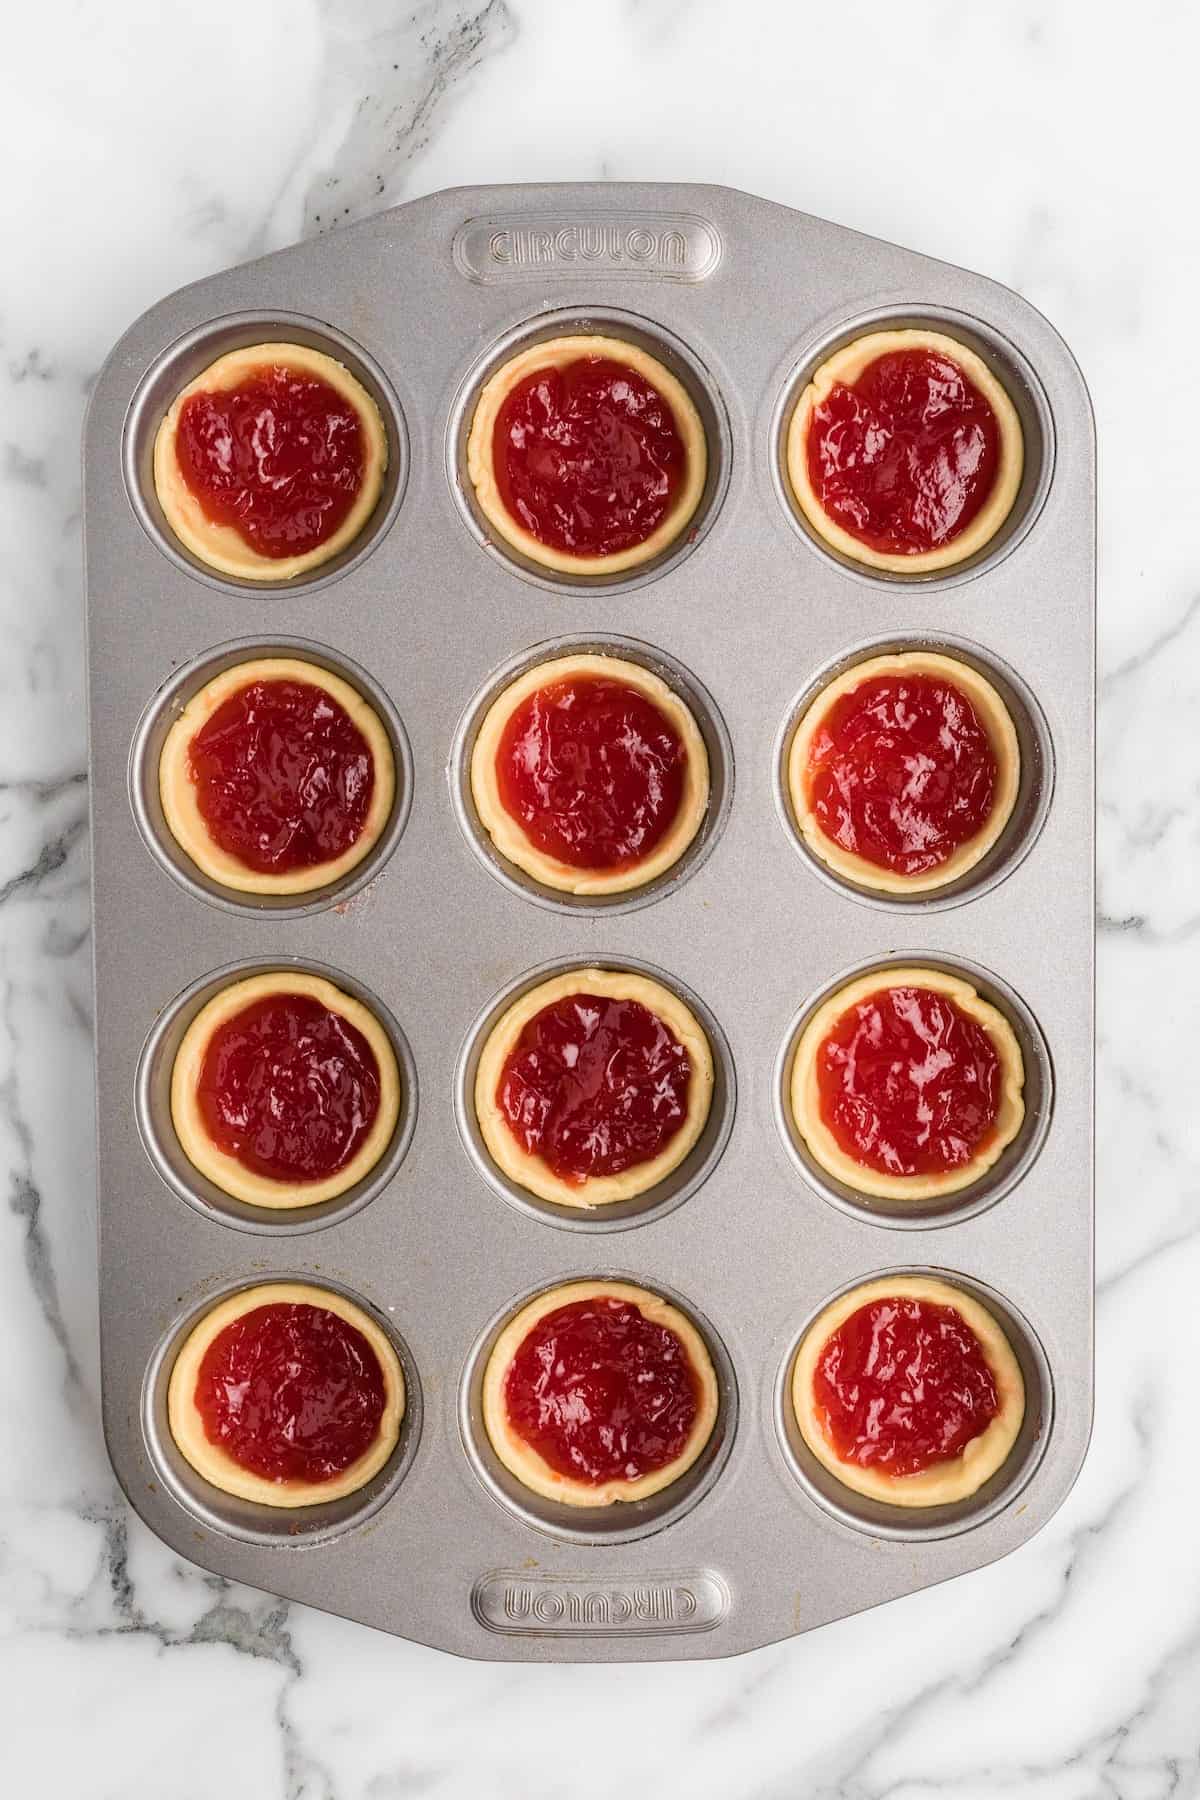 jam filled inside of the tart pastry.